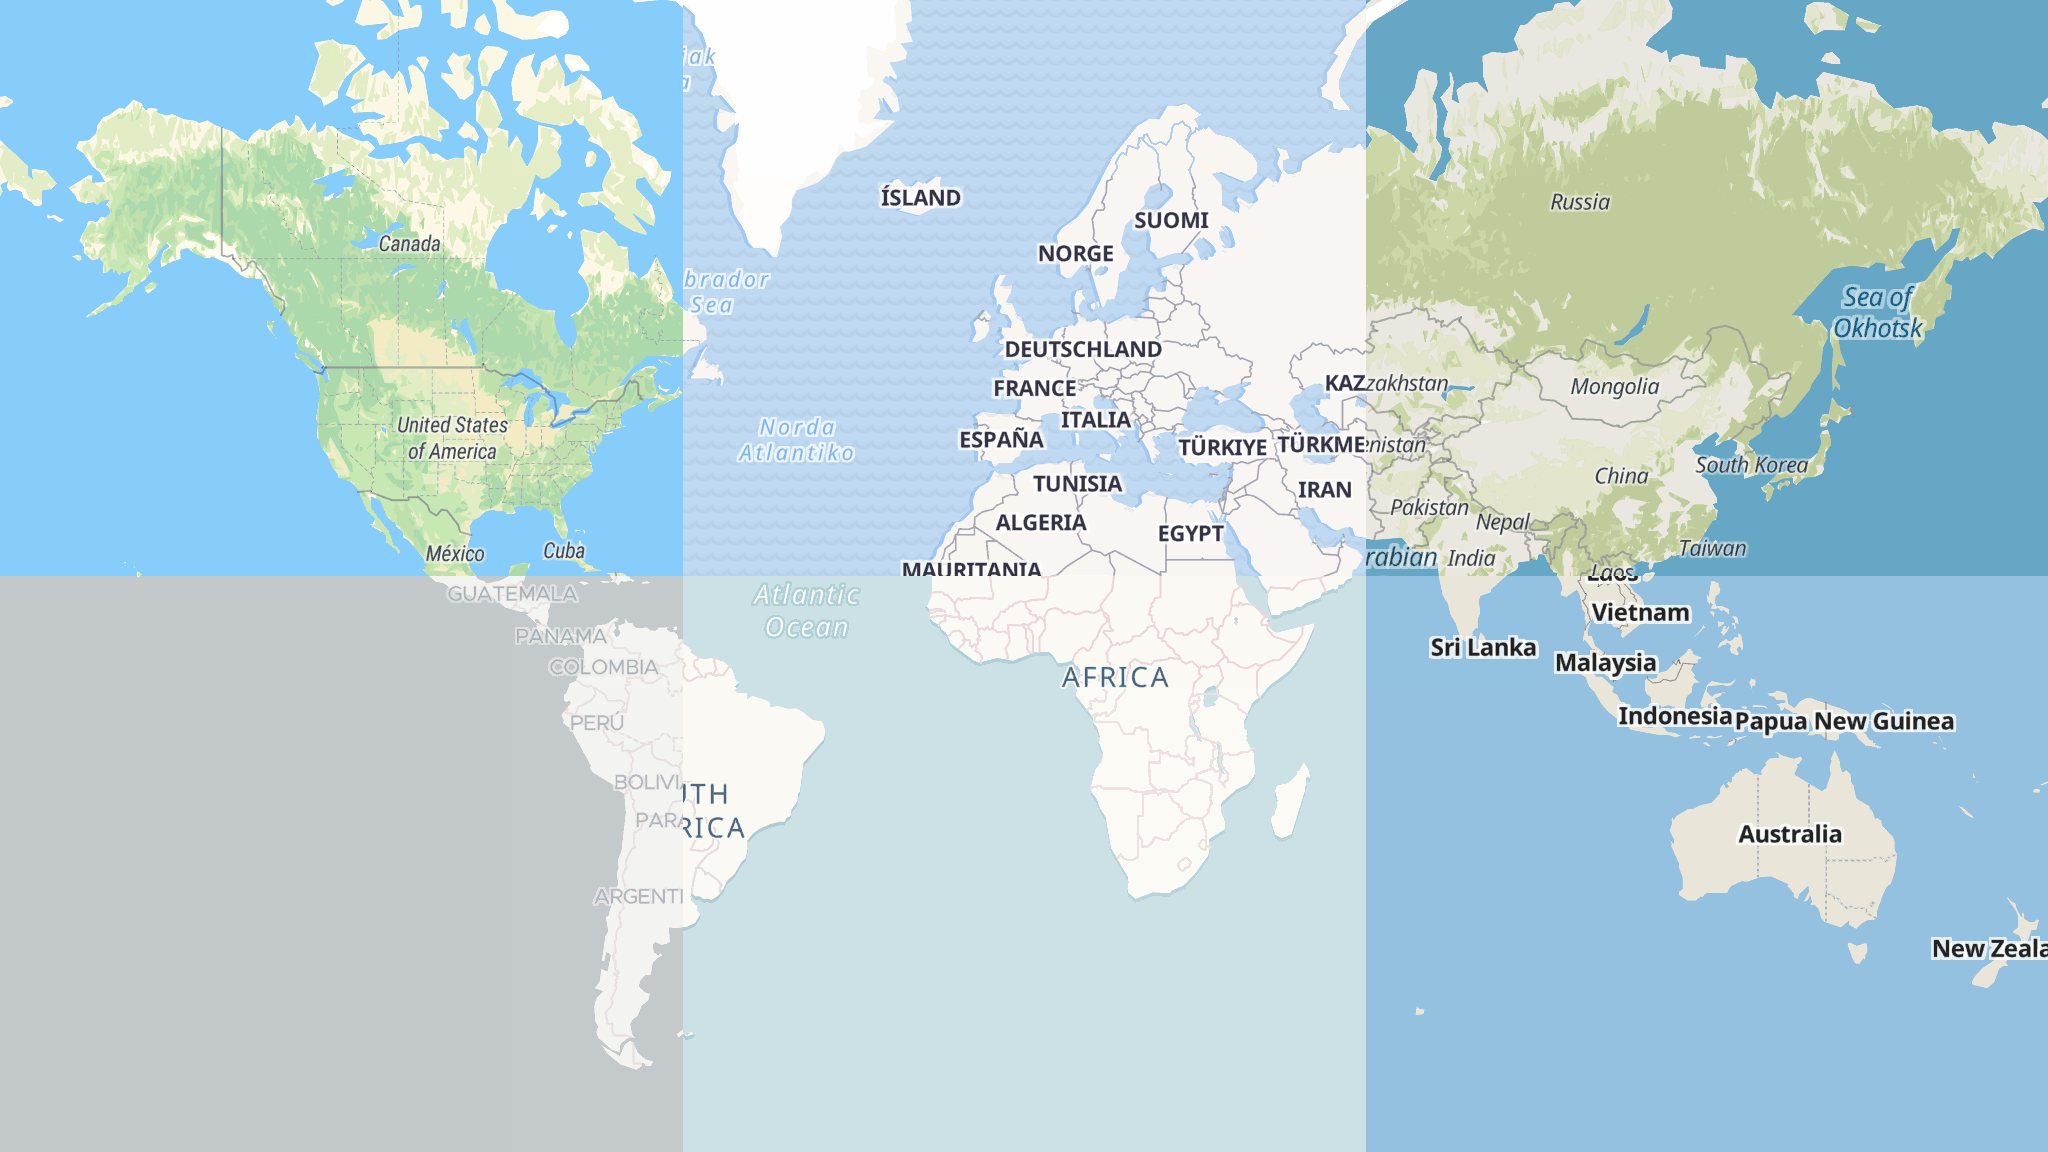 2018-05-21-maptiler-as-google-maps-api-alternative-3.png